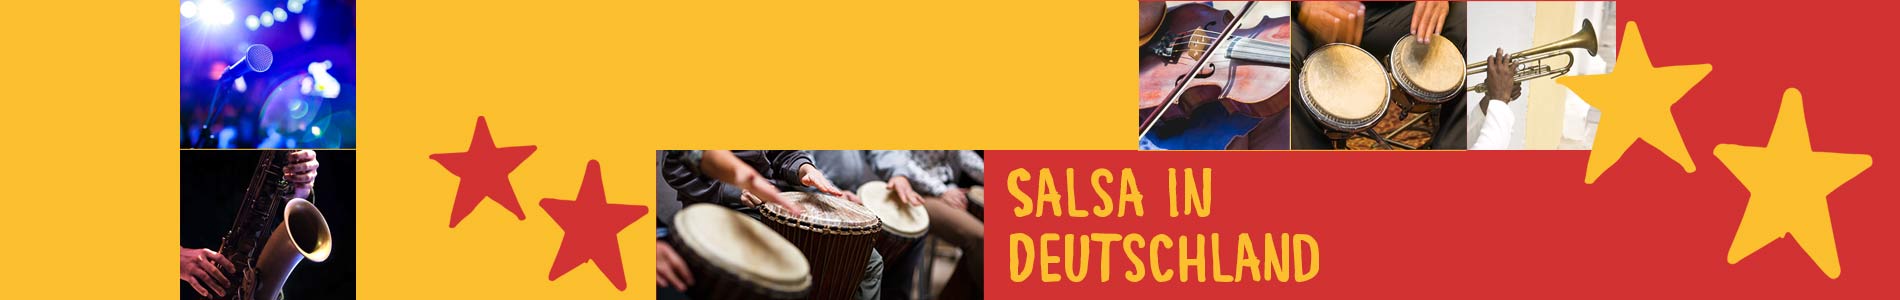 Salsa in Bötersen – Salsa lernen und tanzen, Tanzkurse, Partys, Veranstaltungen